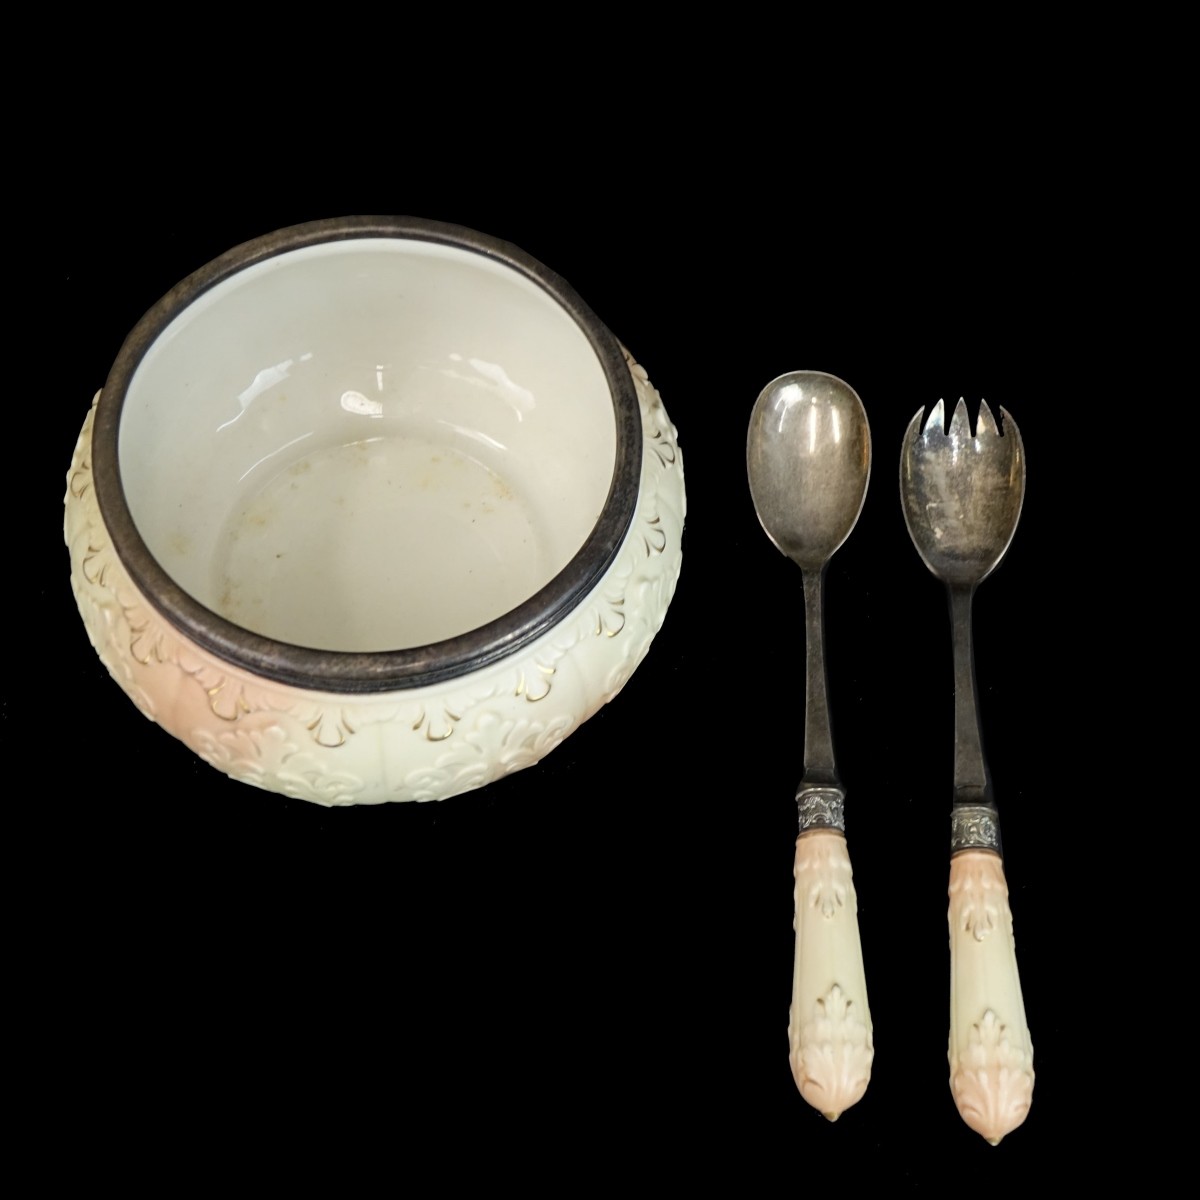 Royal Worcester Tableware